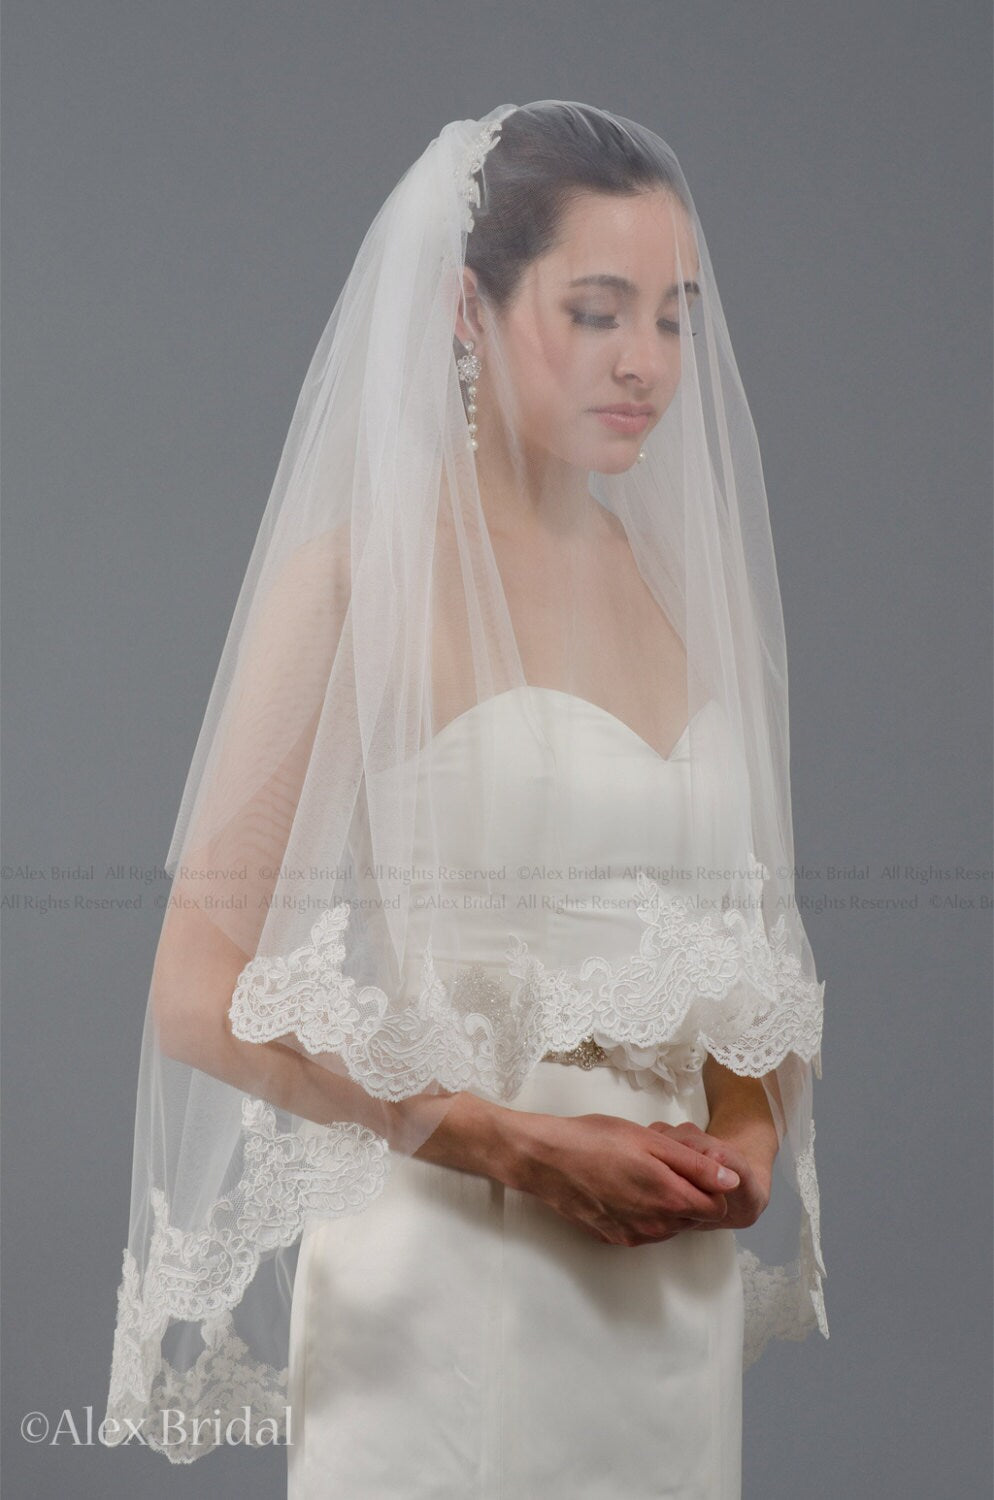 mantilla veil, bridal veil, wedding veil, ivory veil, lace veil, alencon lace, wedding veil ivory, wedding veil lace, elbow veil V041